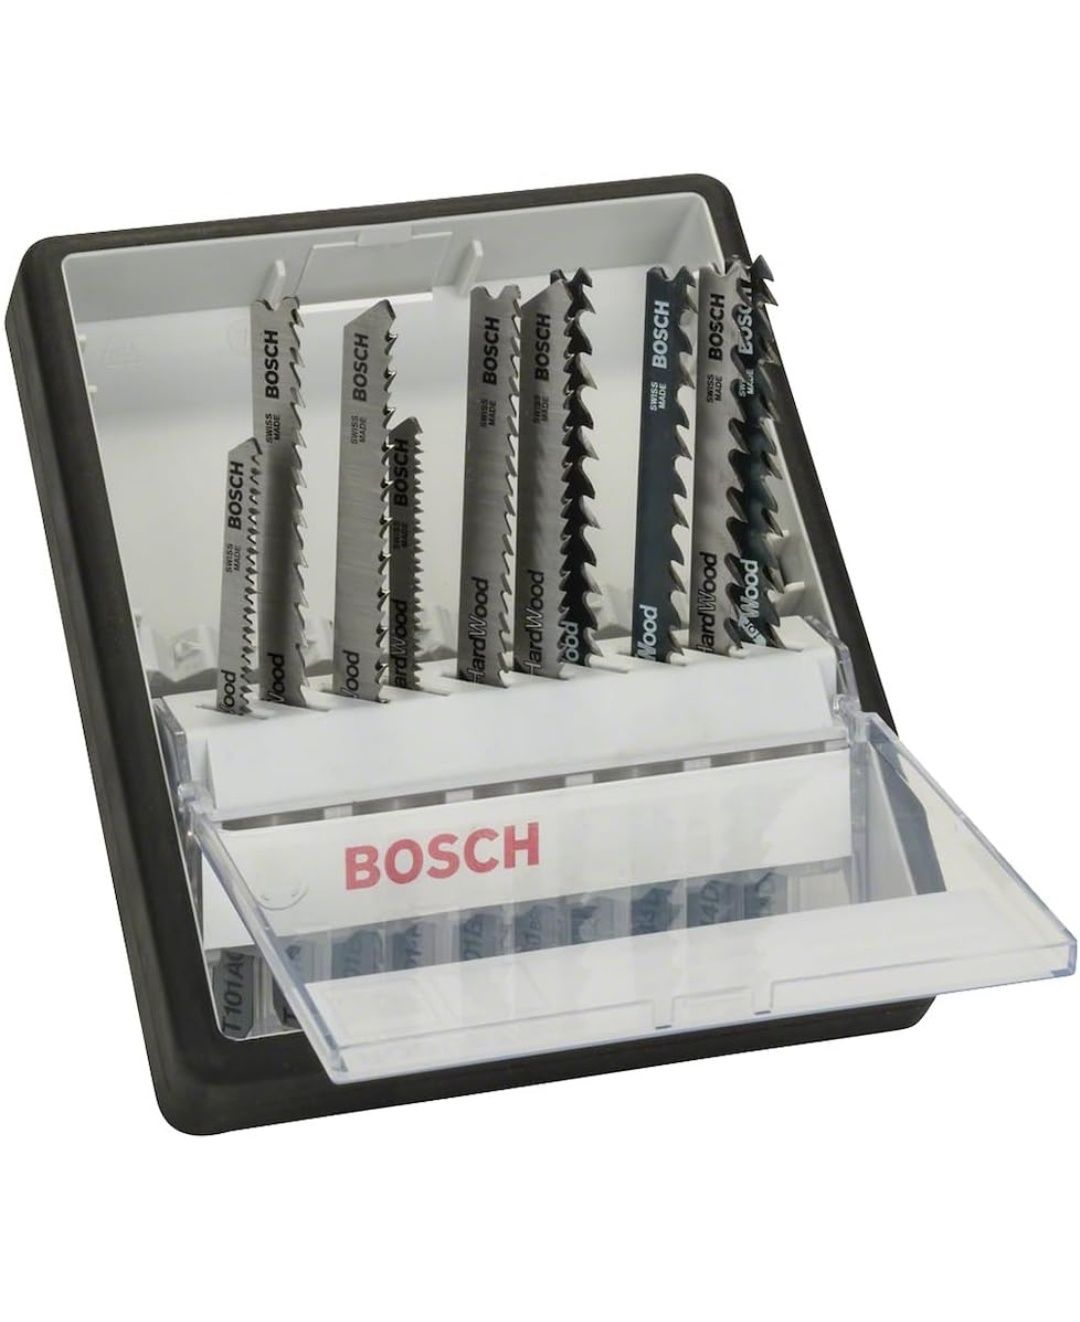 Bosch 10-częściowy zestaw brzeszczotów do wyrzynarek Robust Line  nowy